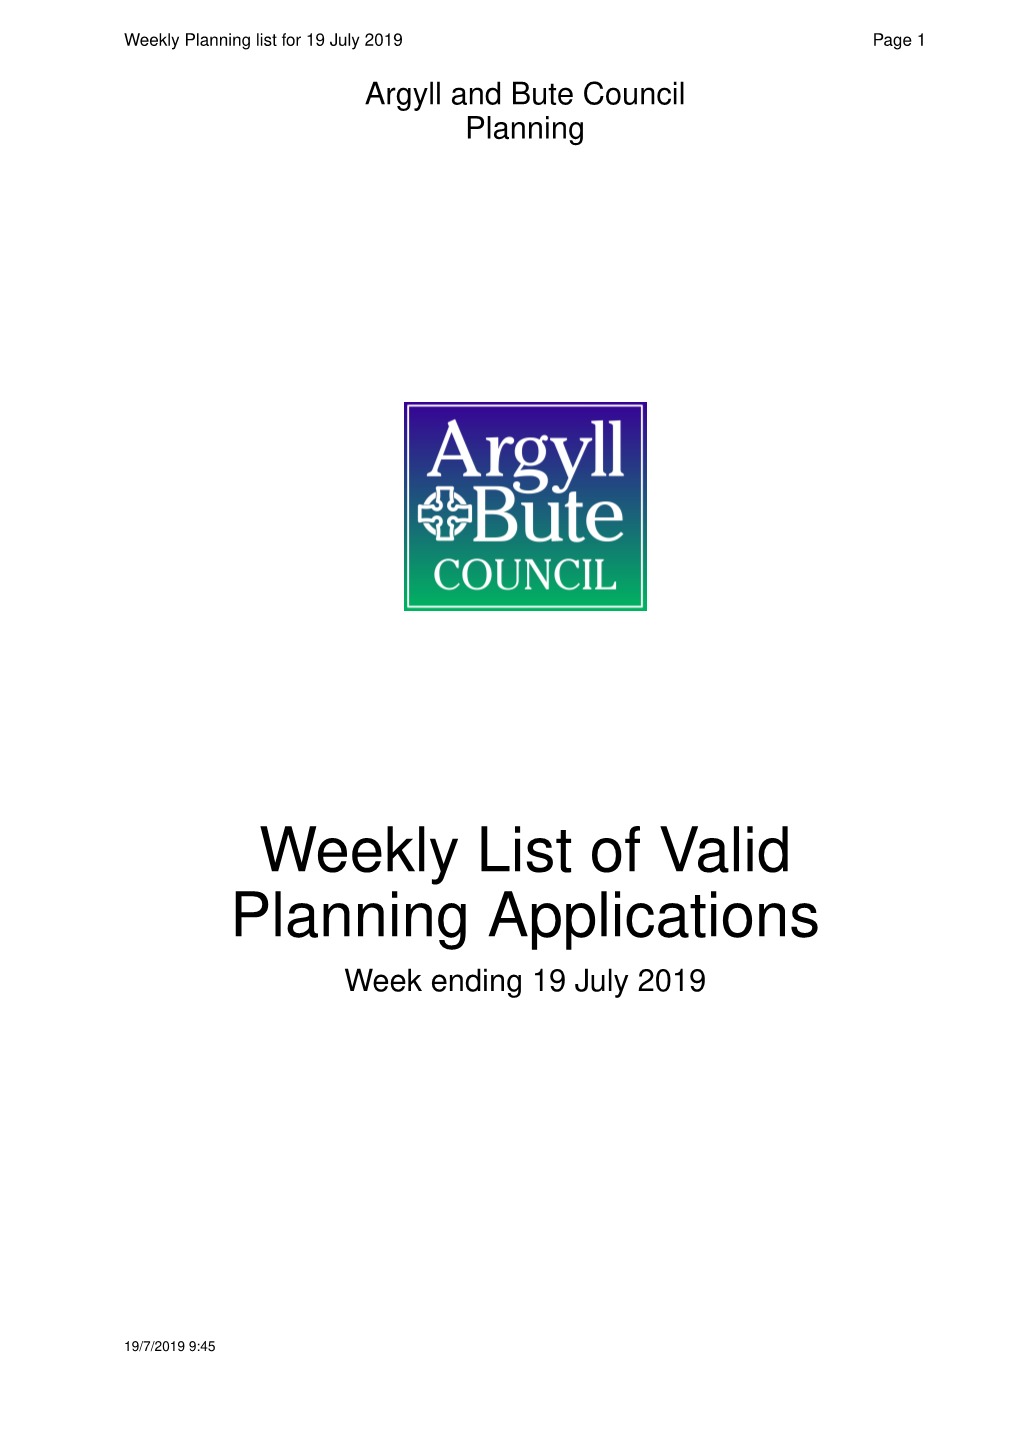 Weekly List of Valid Planning Applications Week Ending 19 July 2019